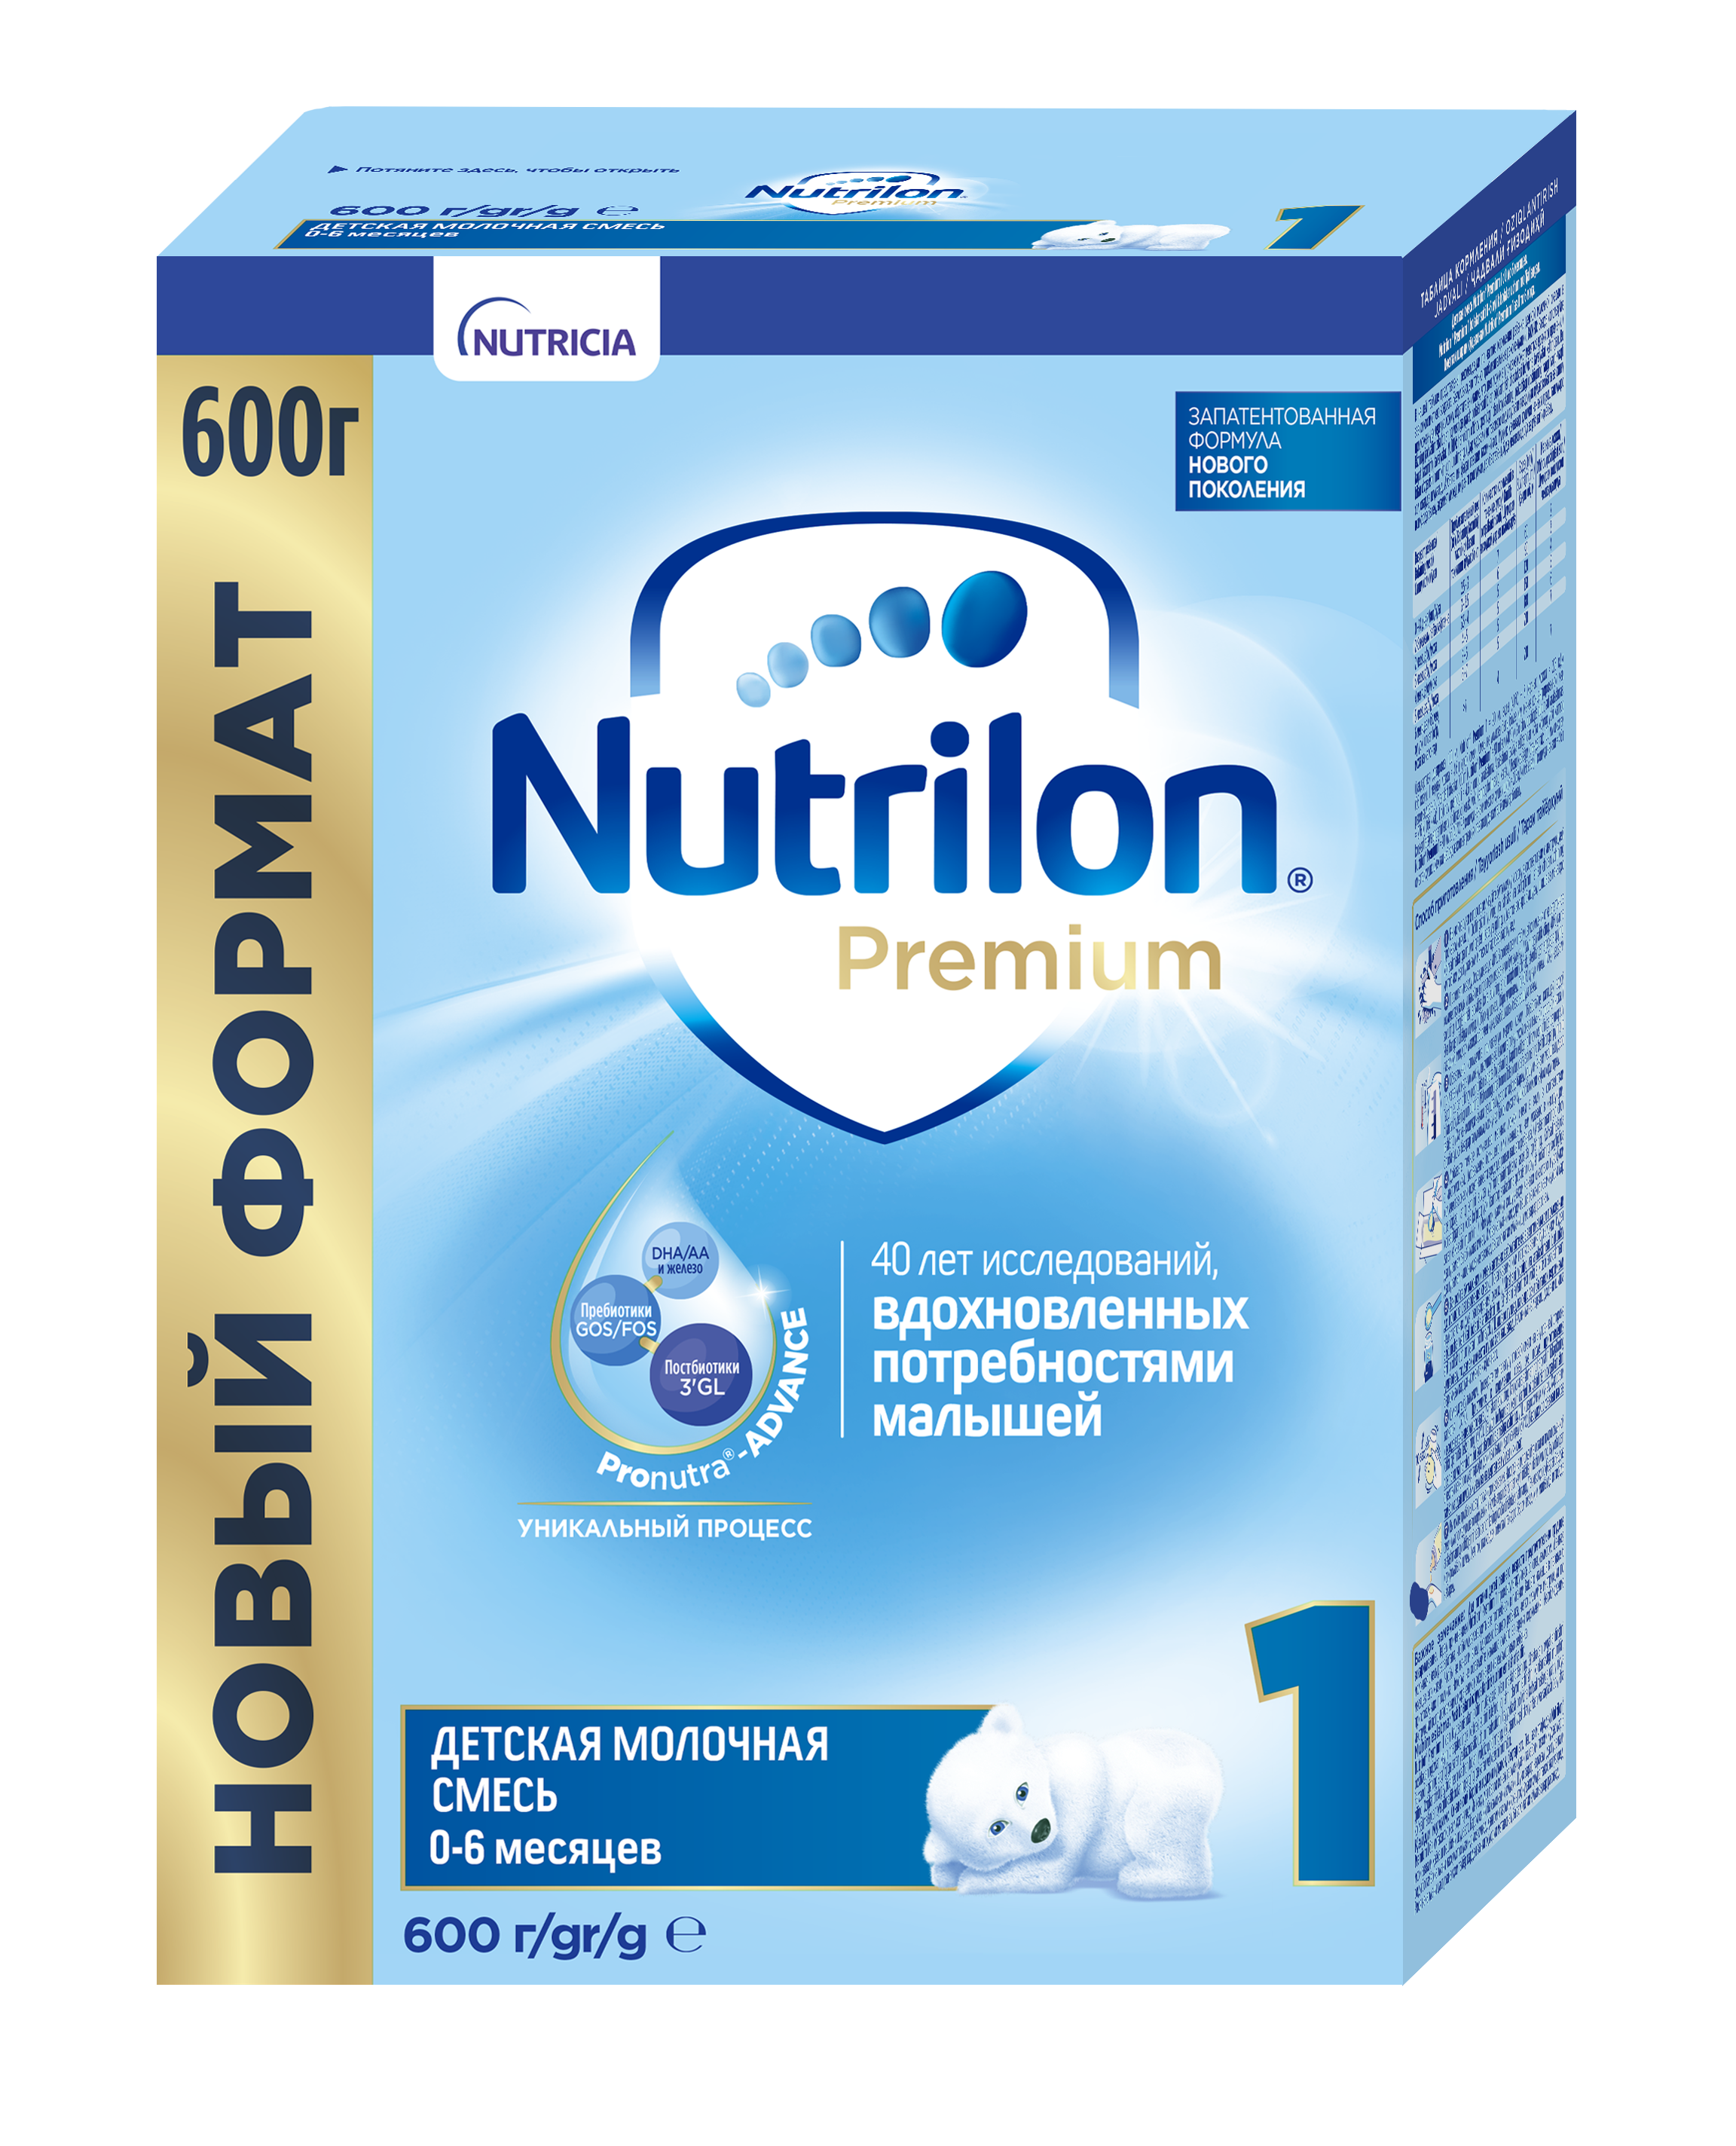 ნუტრილონი პრემიუმი 1 / Nutrilon Premium